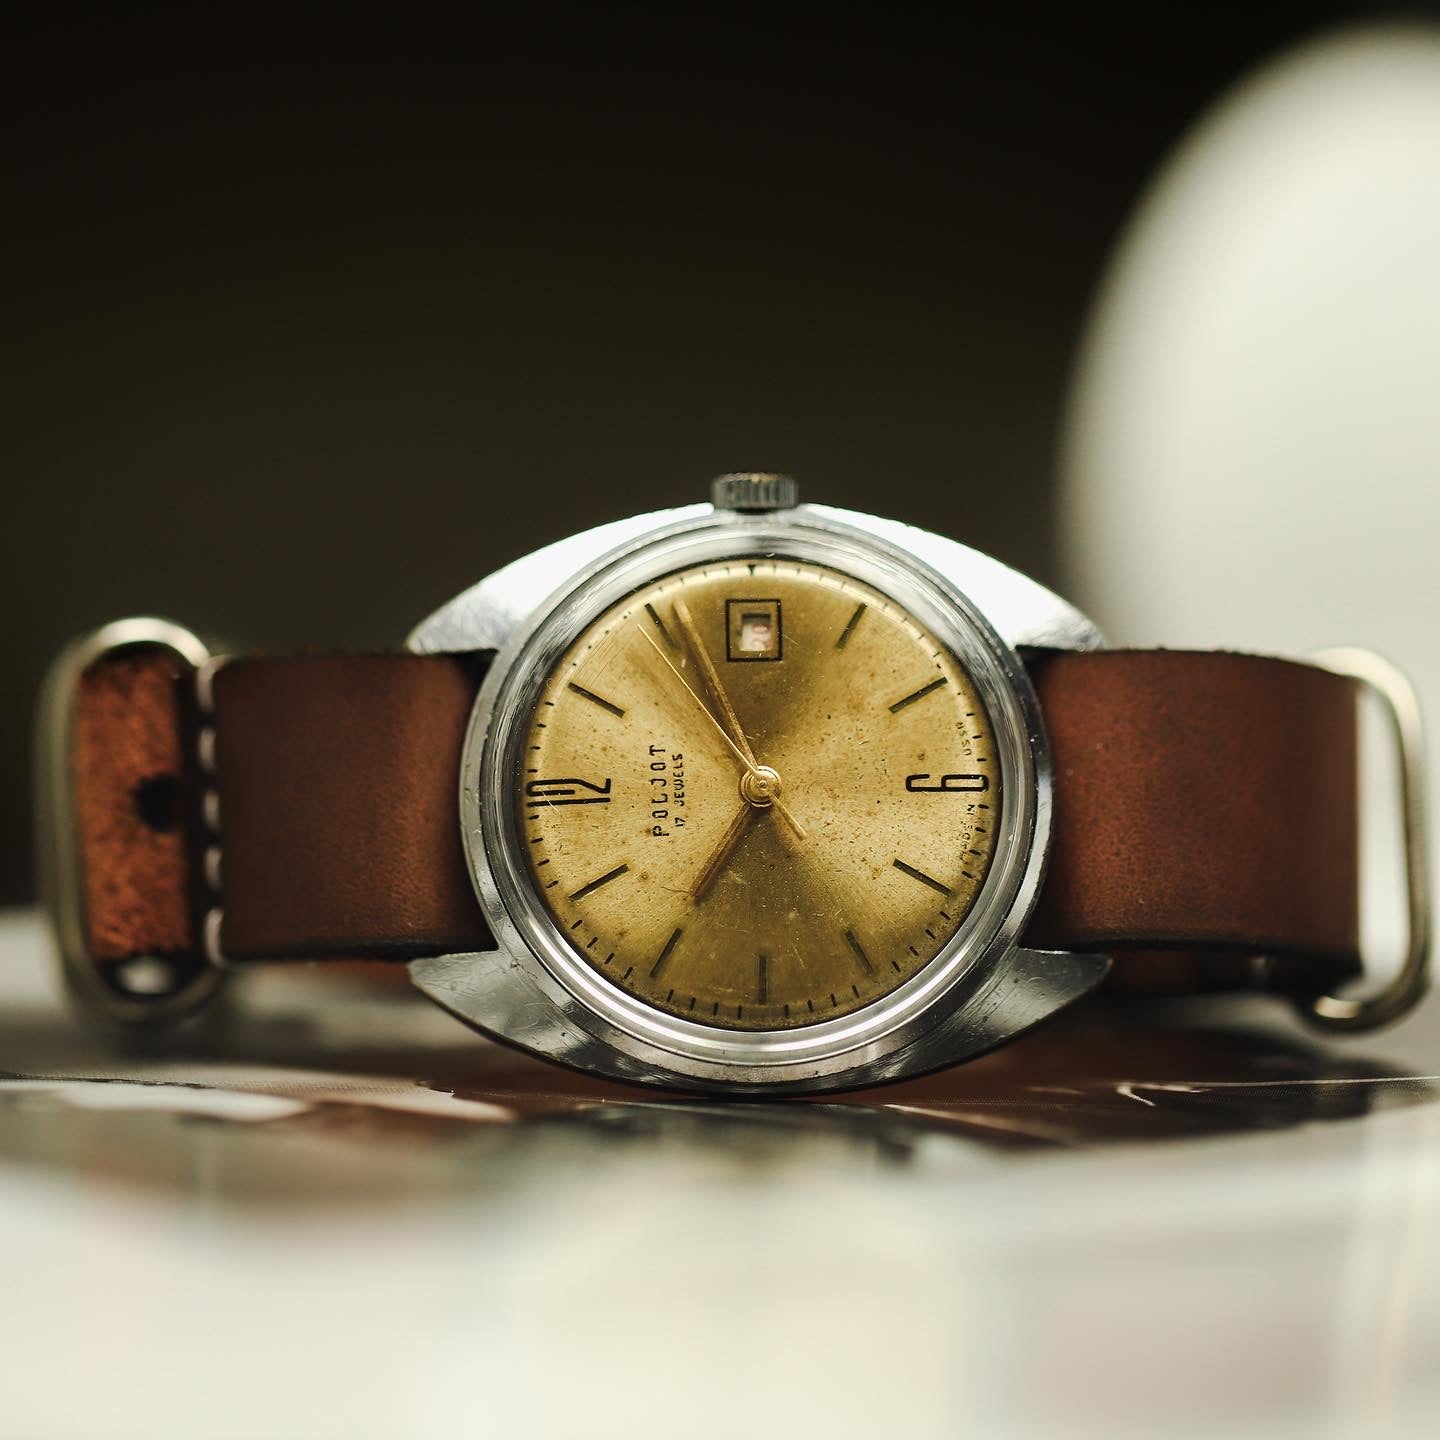 Ultra rare men's vintage soviet wrist watch Poljot with leather nato strap